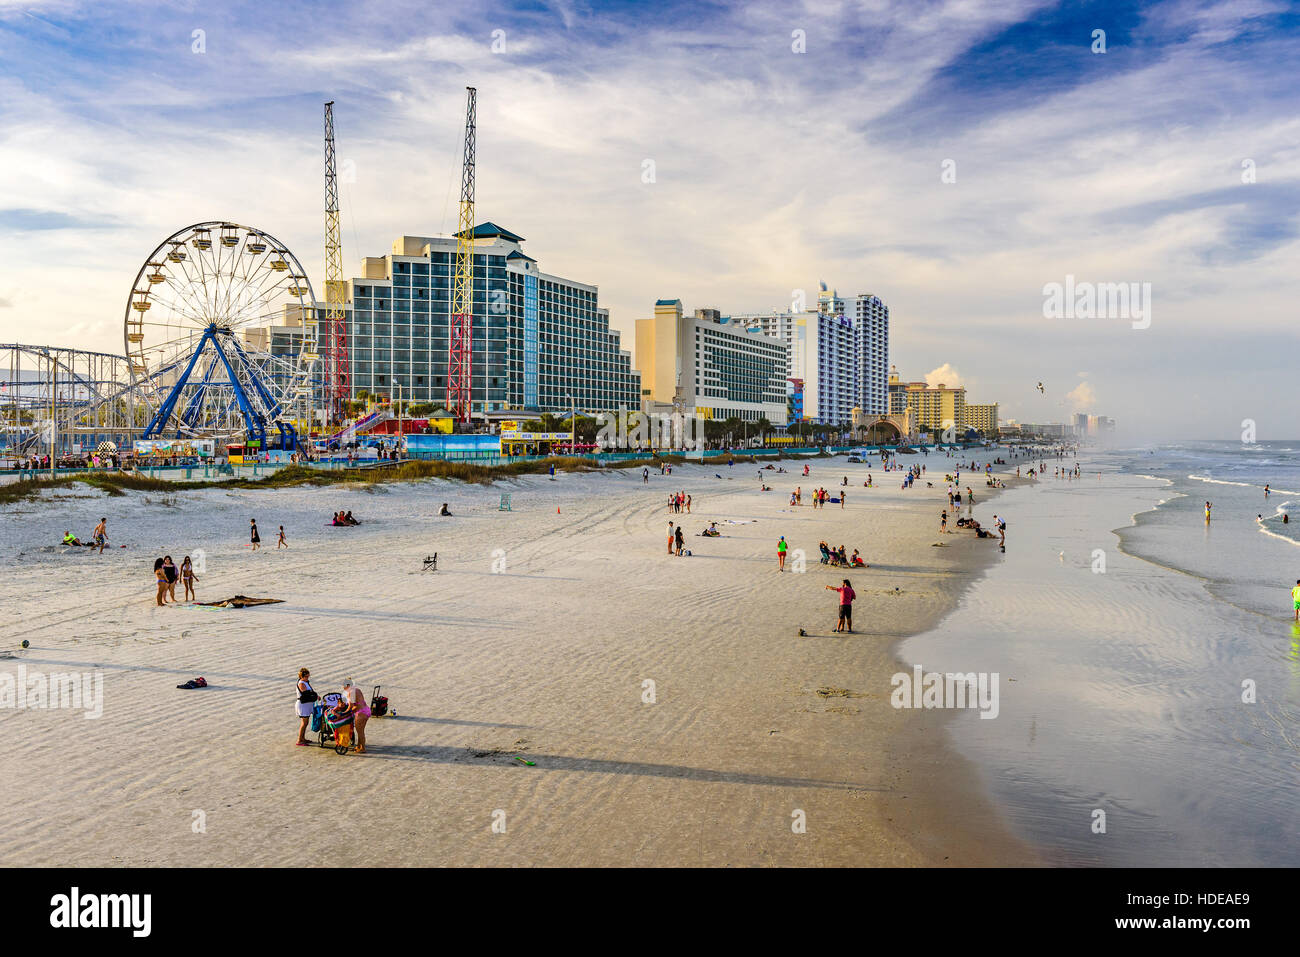 DAYTONA BEACH, FLORIDA - 2. Februar 2015: Strandbesucher in Daytona Beach. Stockfoto